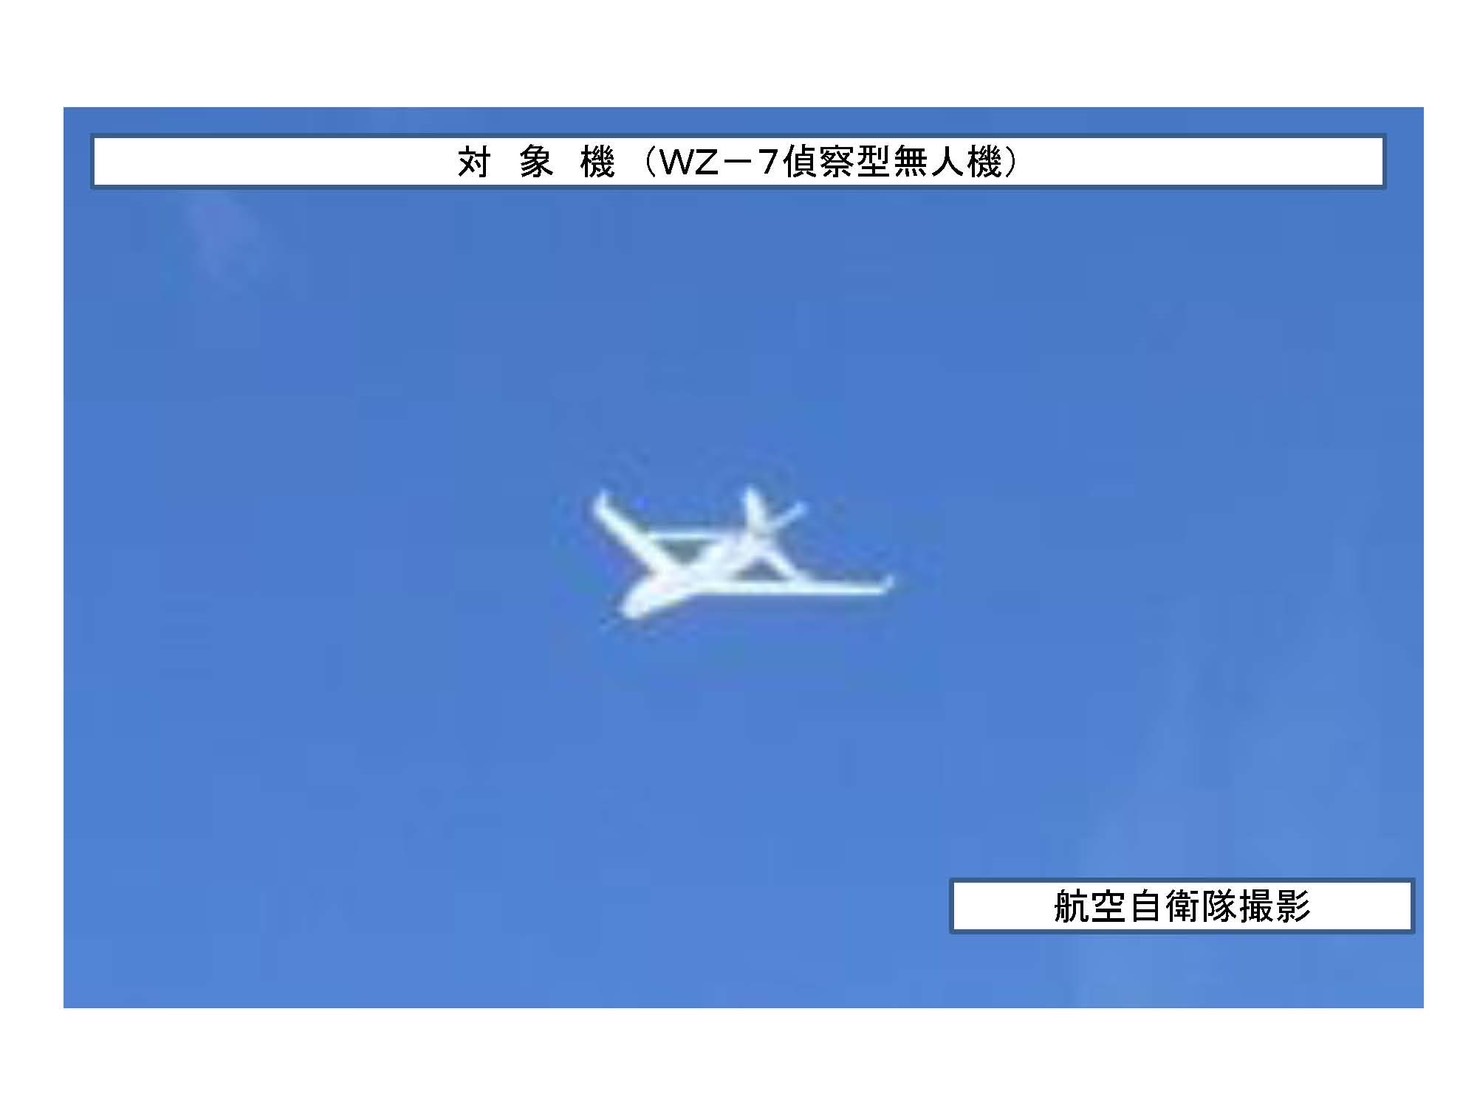 日本本防衛省統合幕僚監部發佈消息稱，發現一架中國WZ-7無人偵察機在日本海飛行。 圖/取自日本防衛省